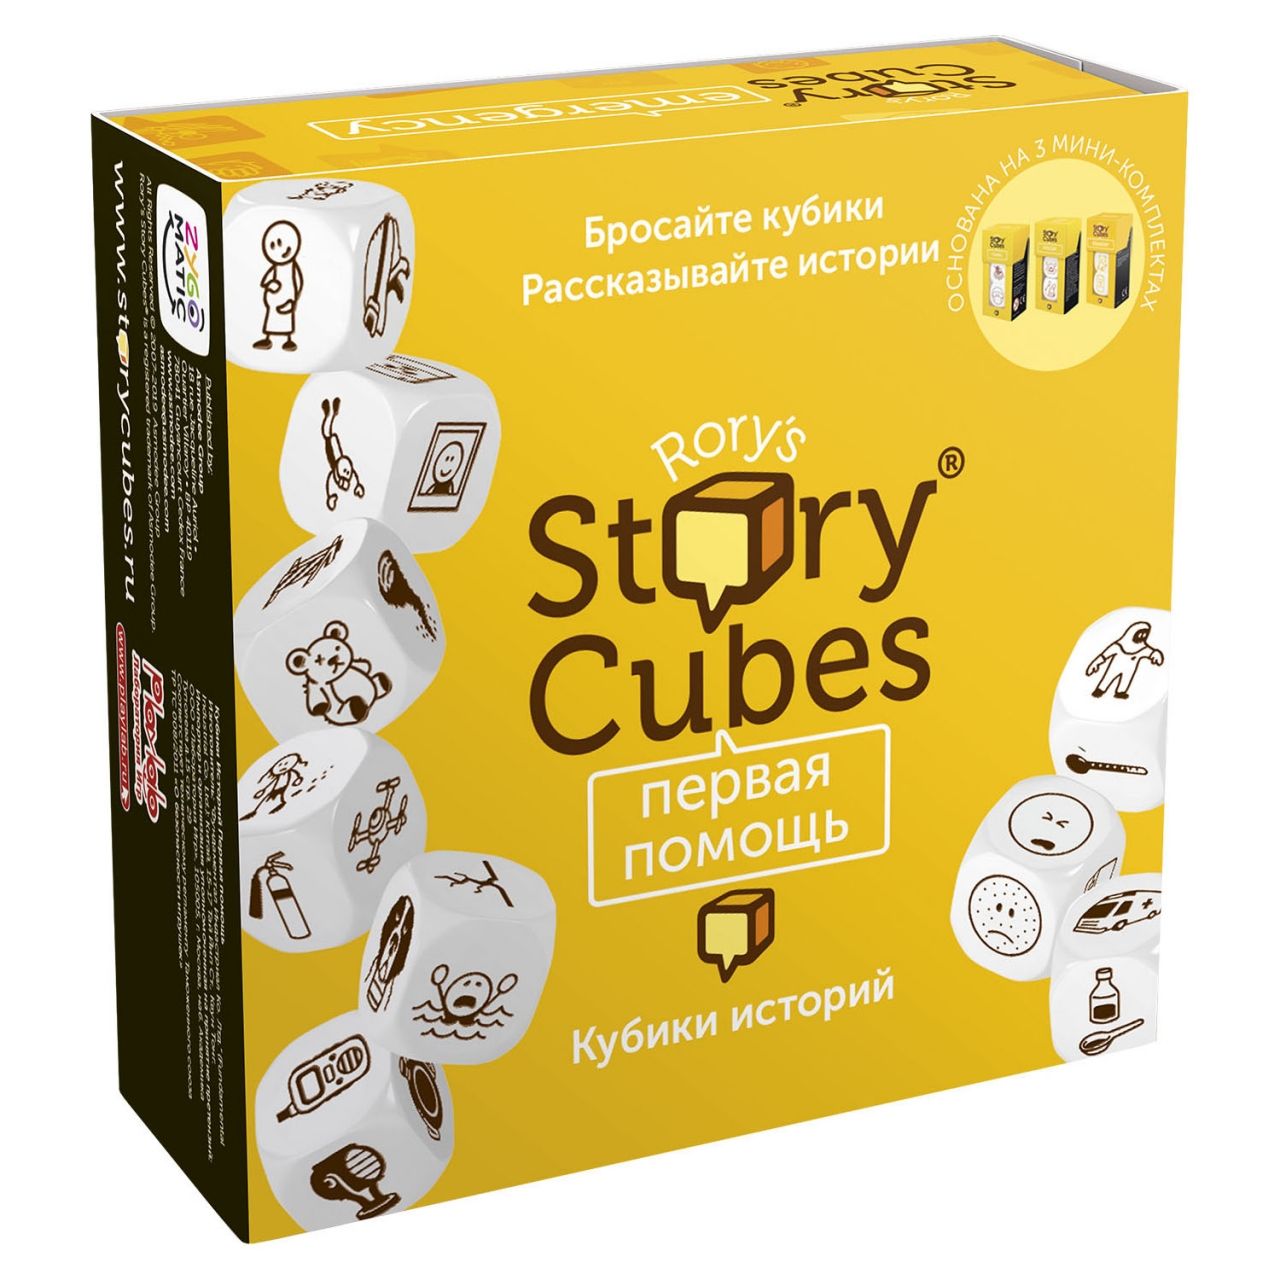 кубики историй первая помощь Настольная игра RORYS STORY CUBES RSC32 кубики историй Первая помощь